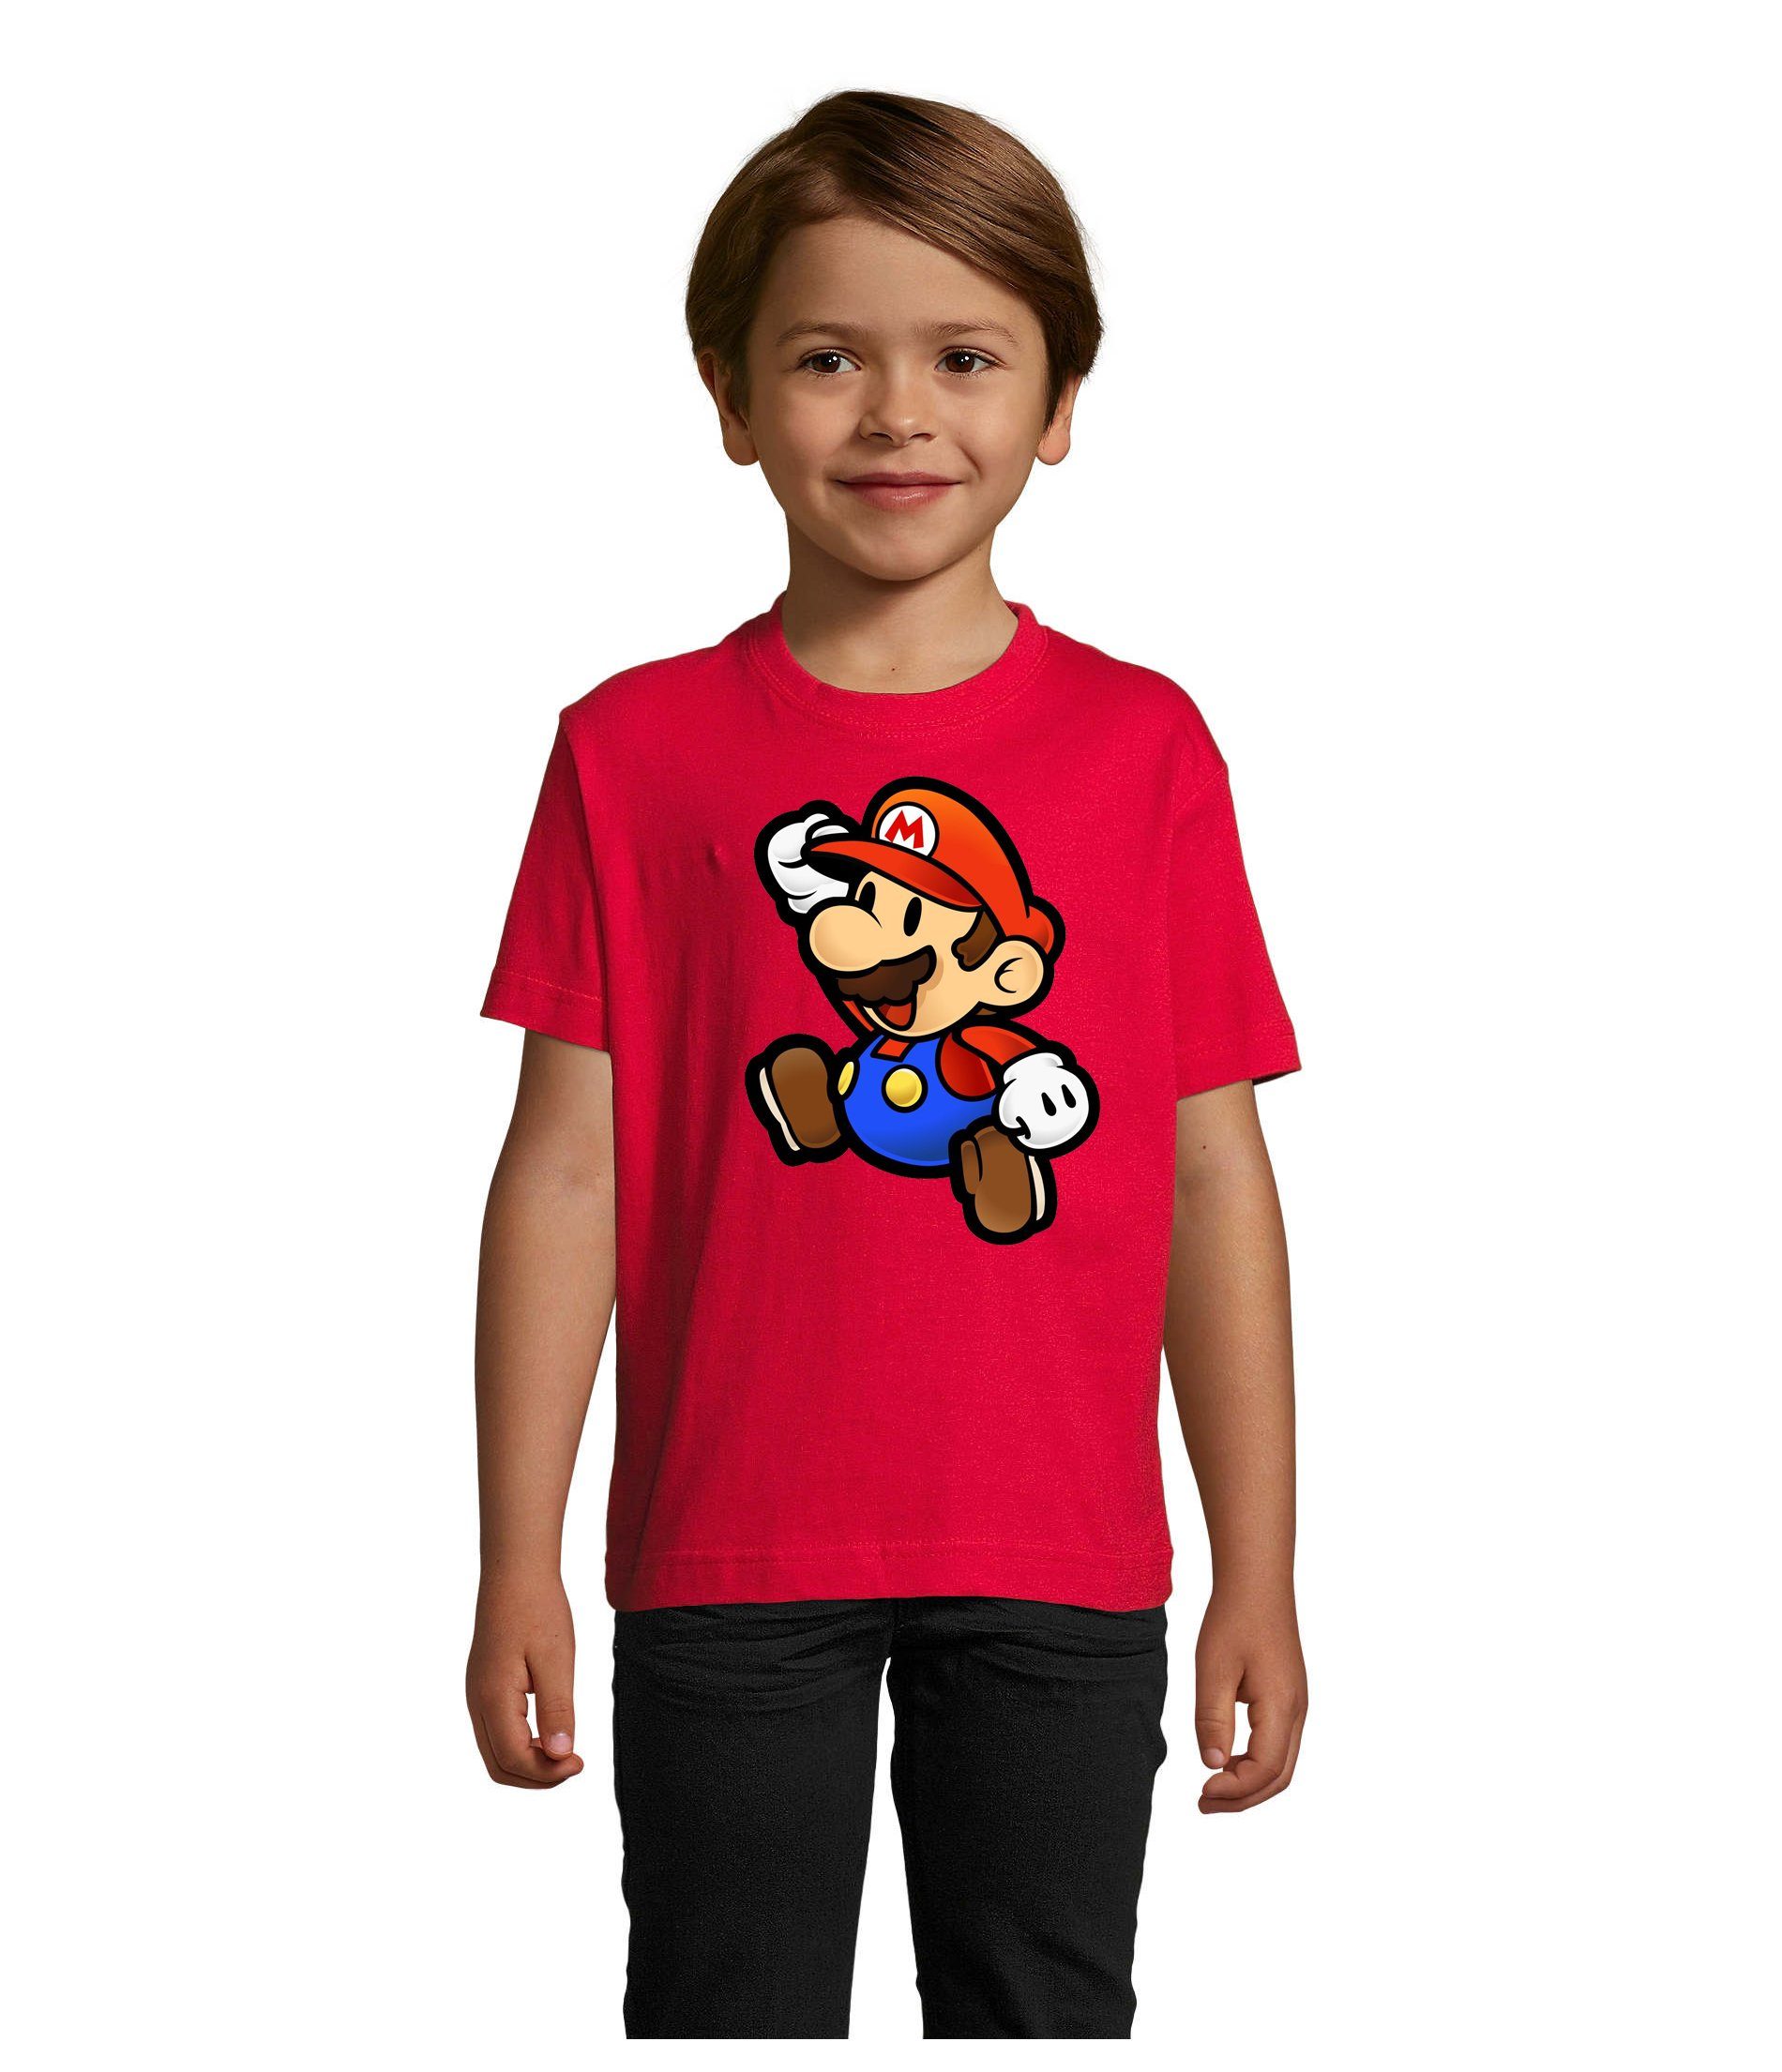 Blondie & Brownie T-Shirt Kinder Jungen & Mädchen Mario Nintendo Gaming Luigi Yoshi Super in vielen Farben Rot